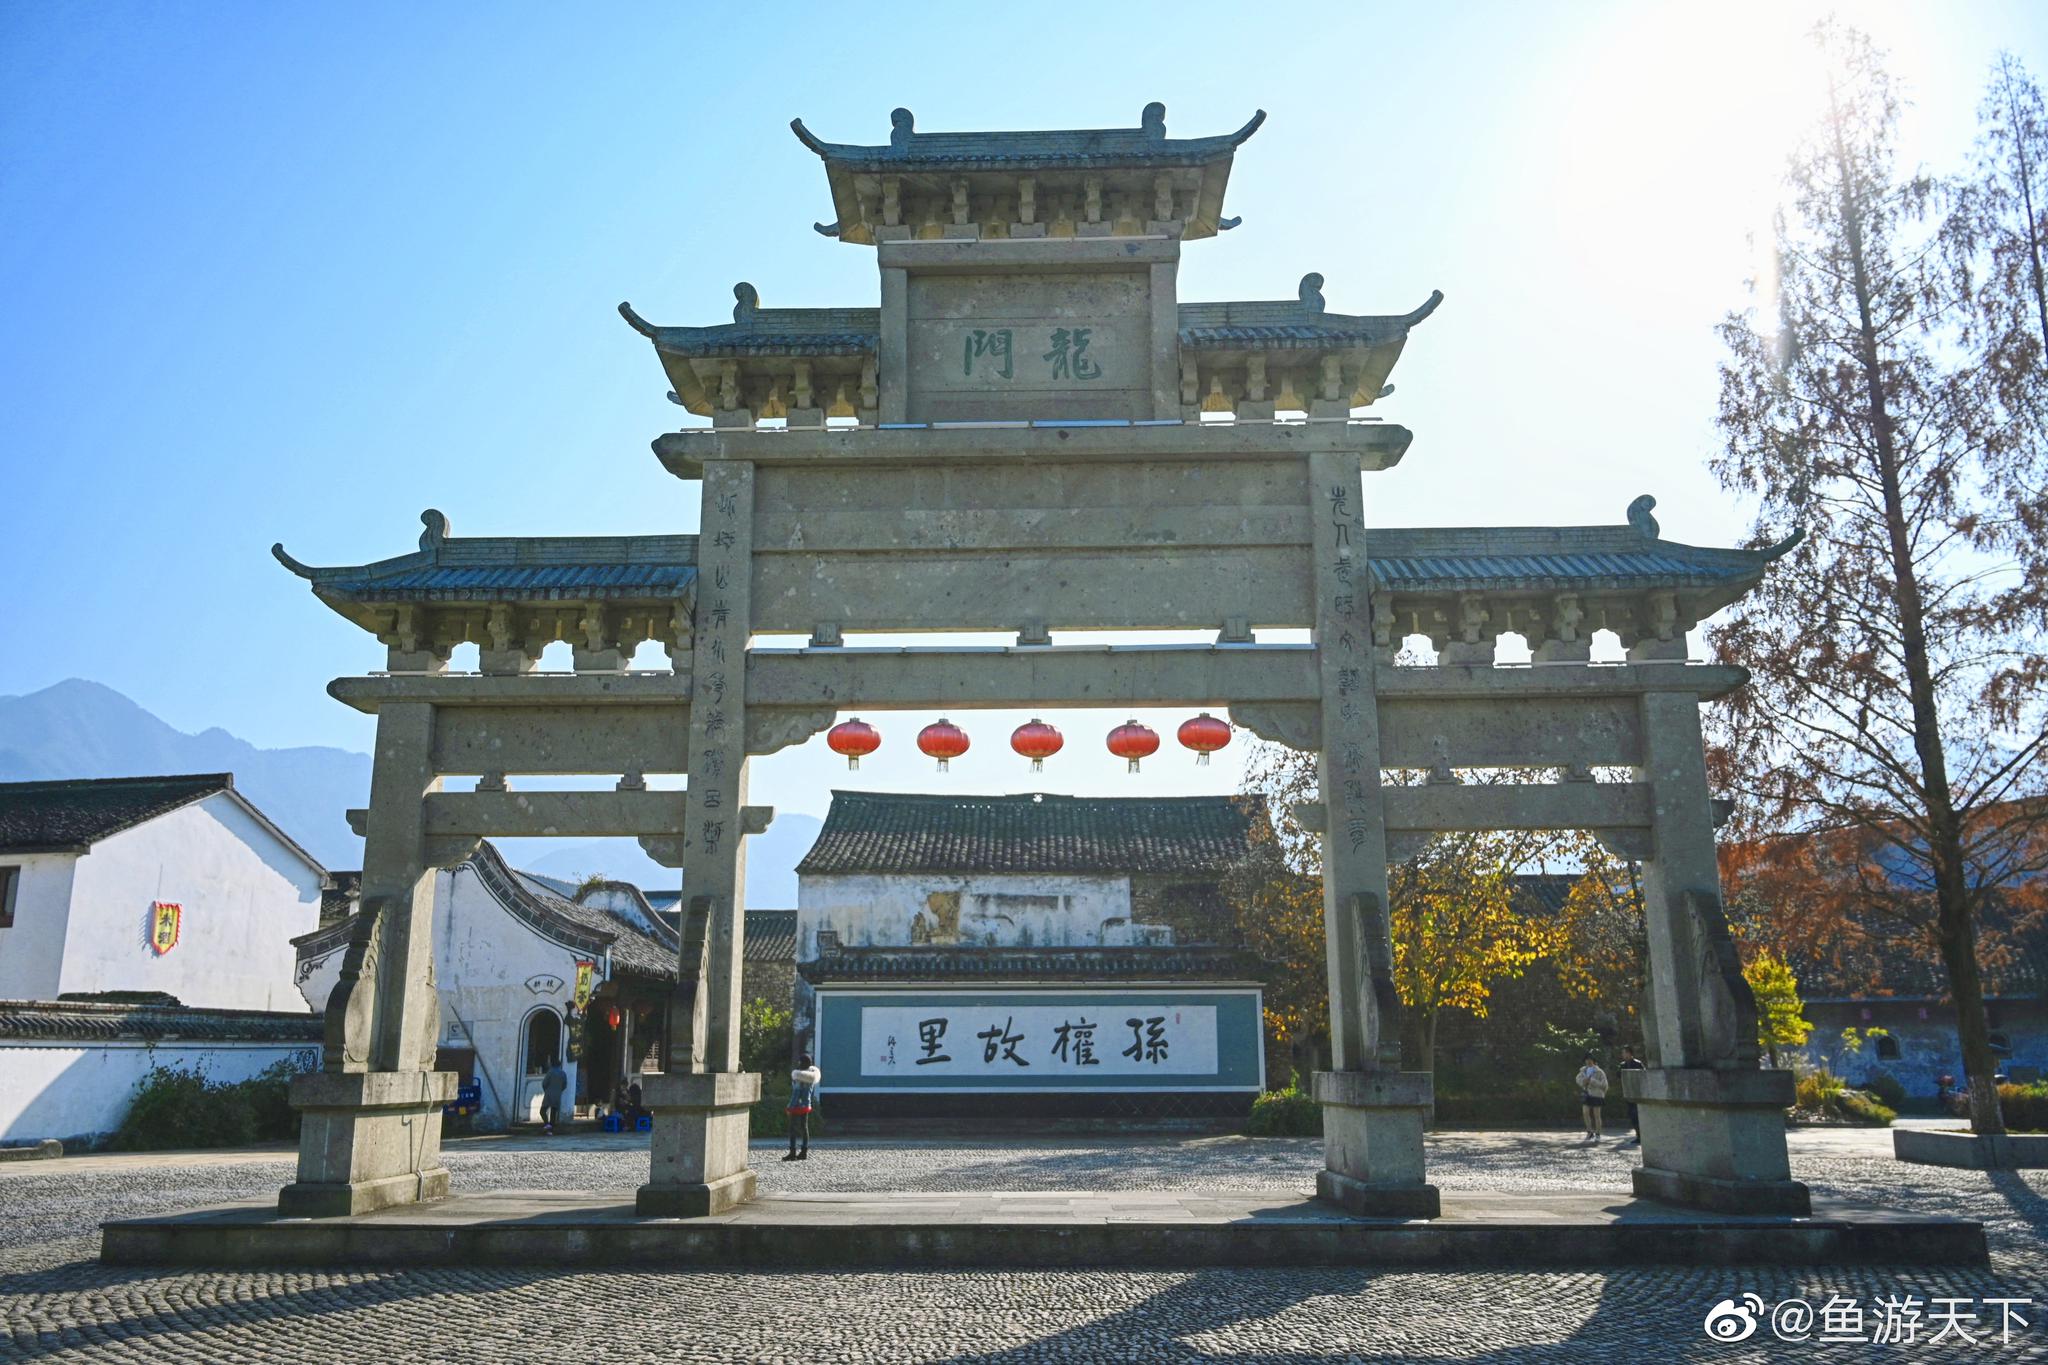 第一次来到位于杭州市富阳区的龙门古镇,地处秀丽的富春江南岸